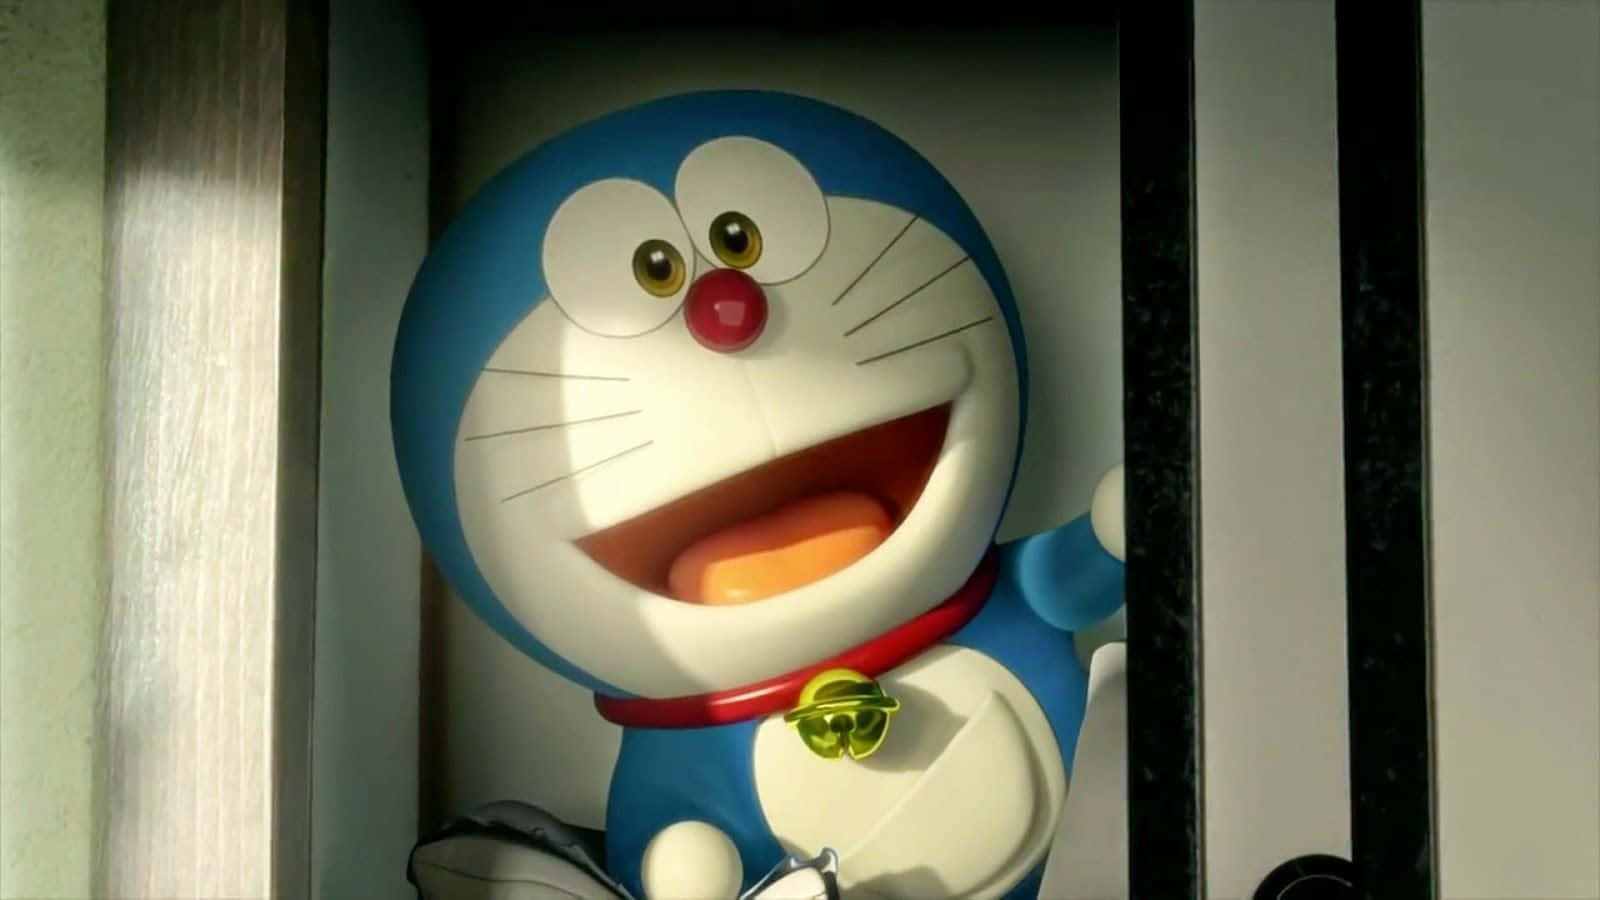 Doraemonlisto Para Hacer Tus Deseos Realidad